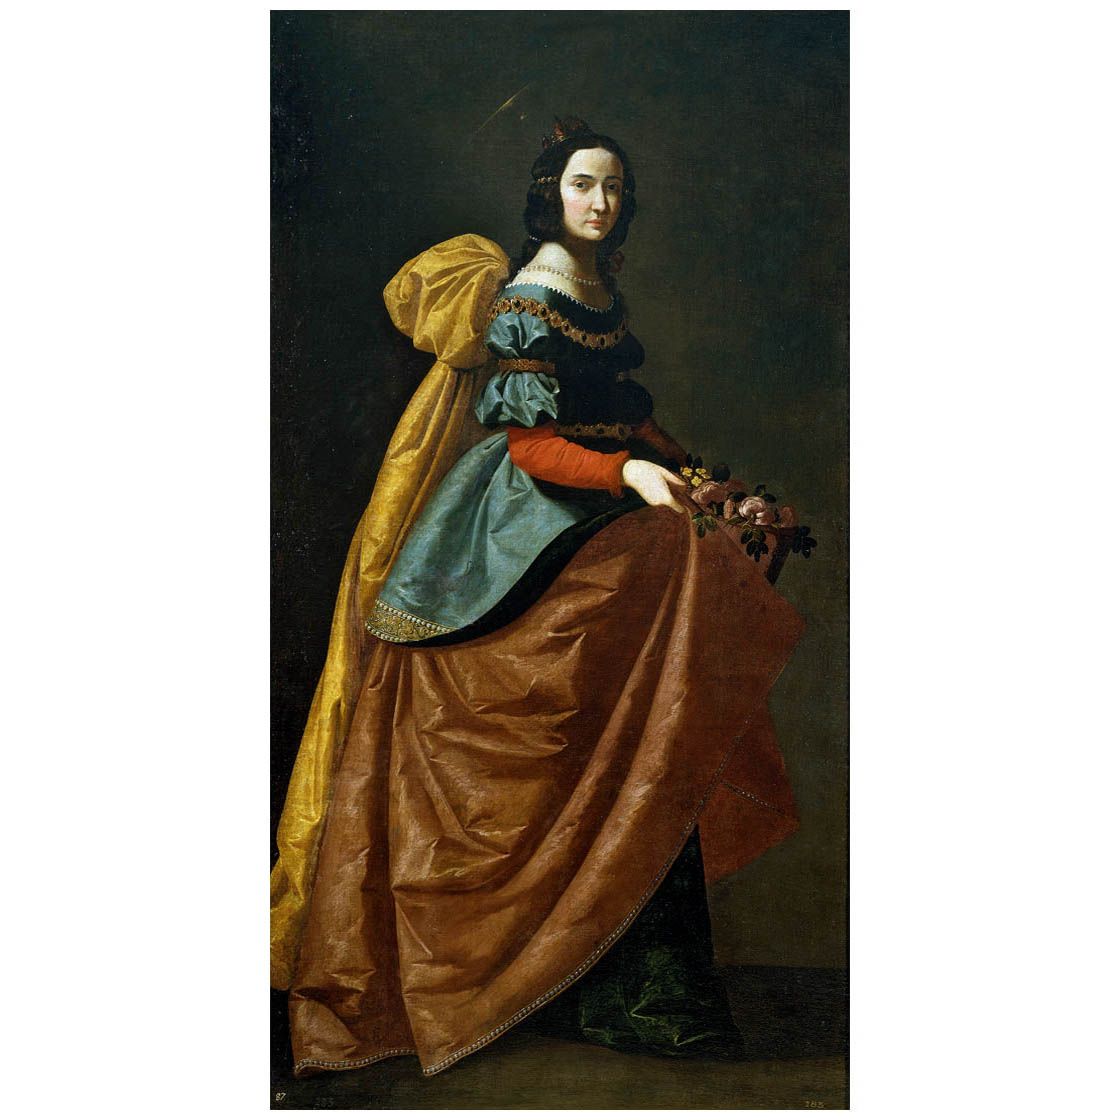 Francisco de Zurbaran. Santa Isabel de Portugal. 1630-1635. Museo del Prado